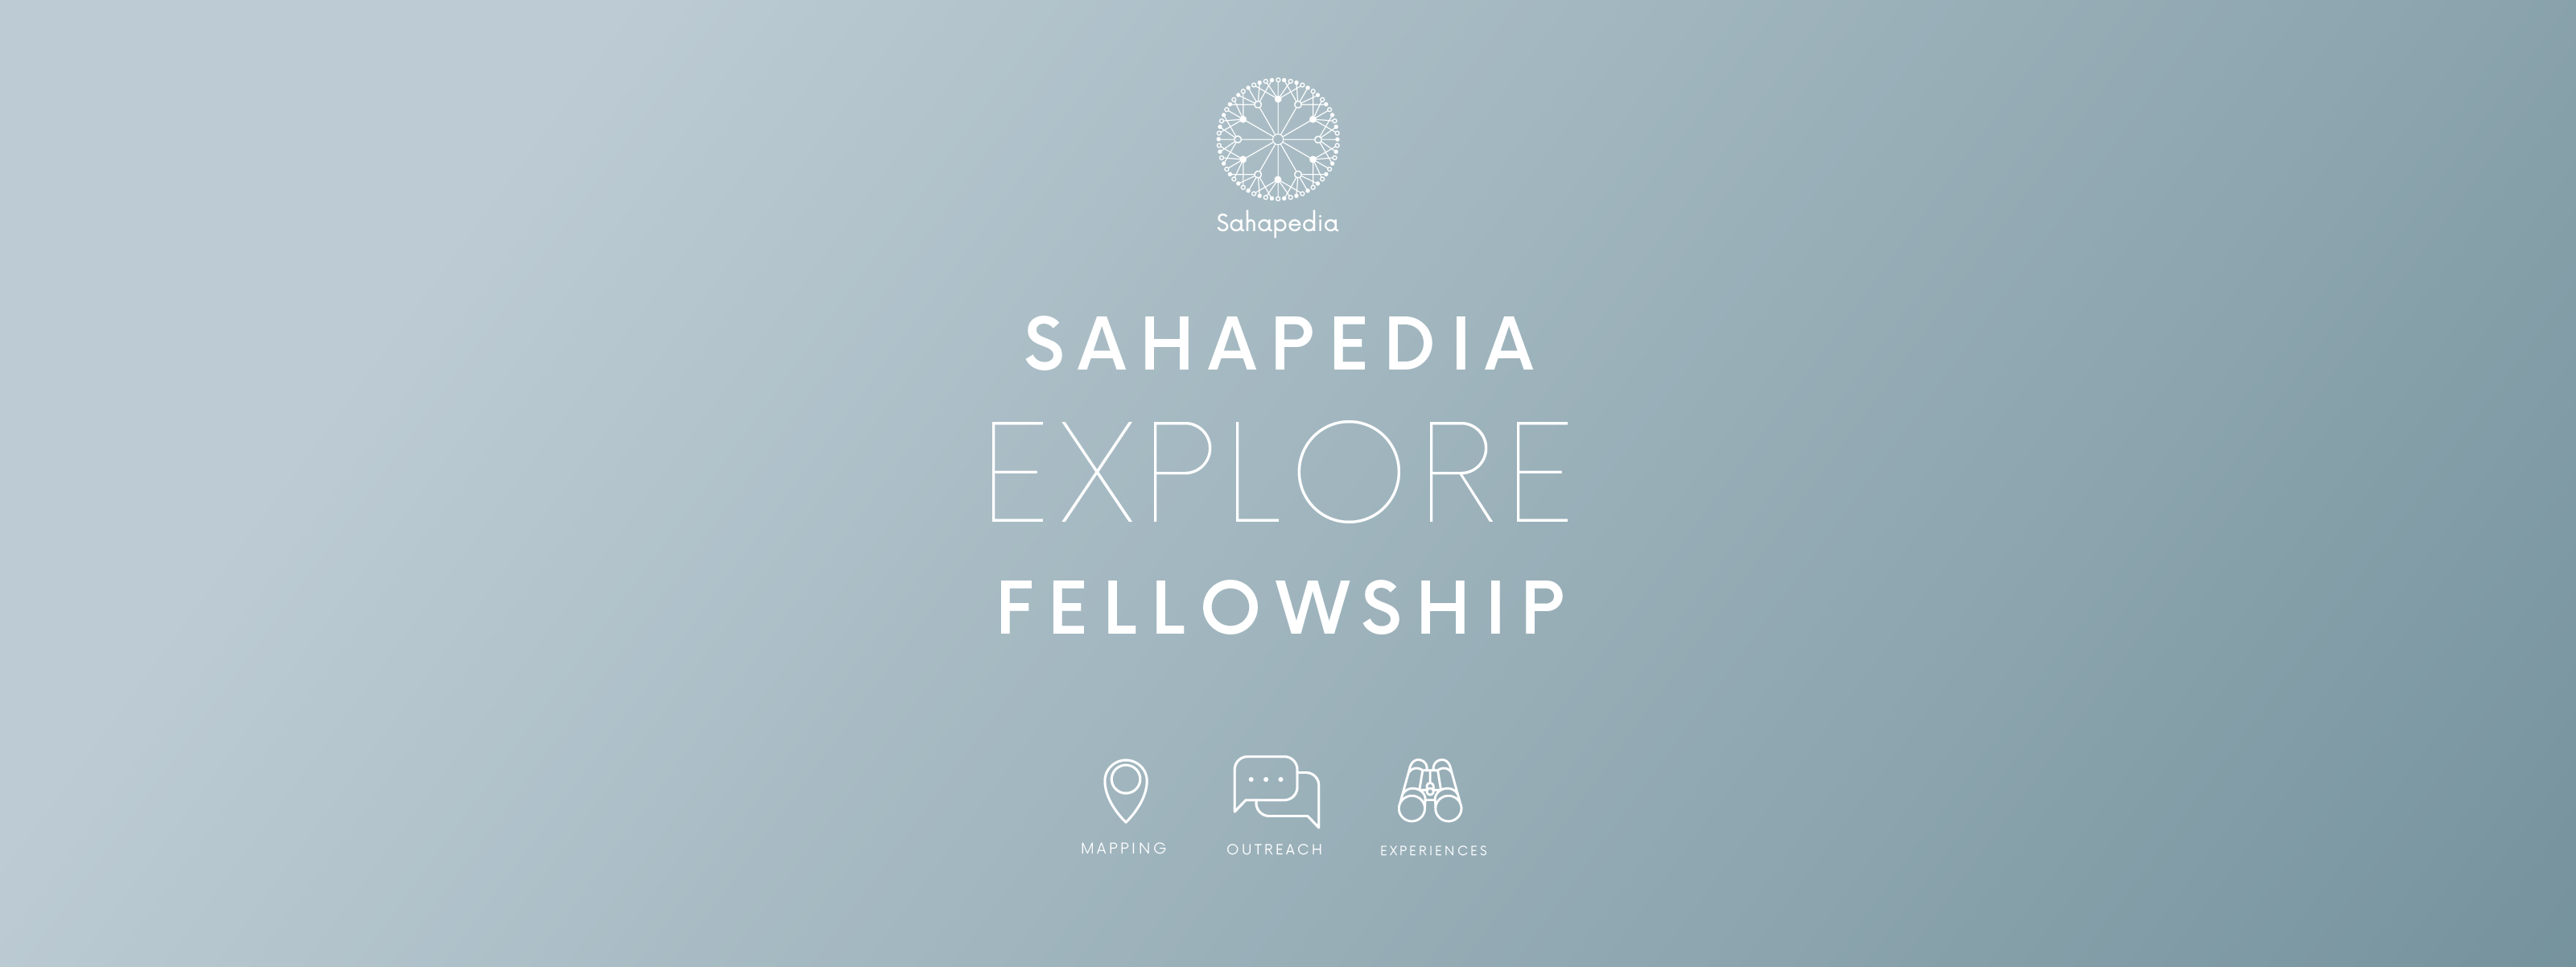 Sahapedia Explore Fellowship